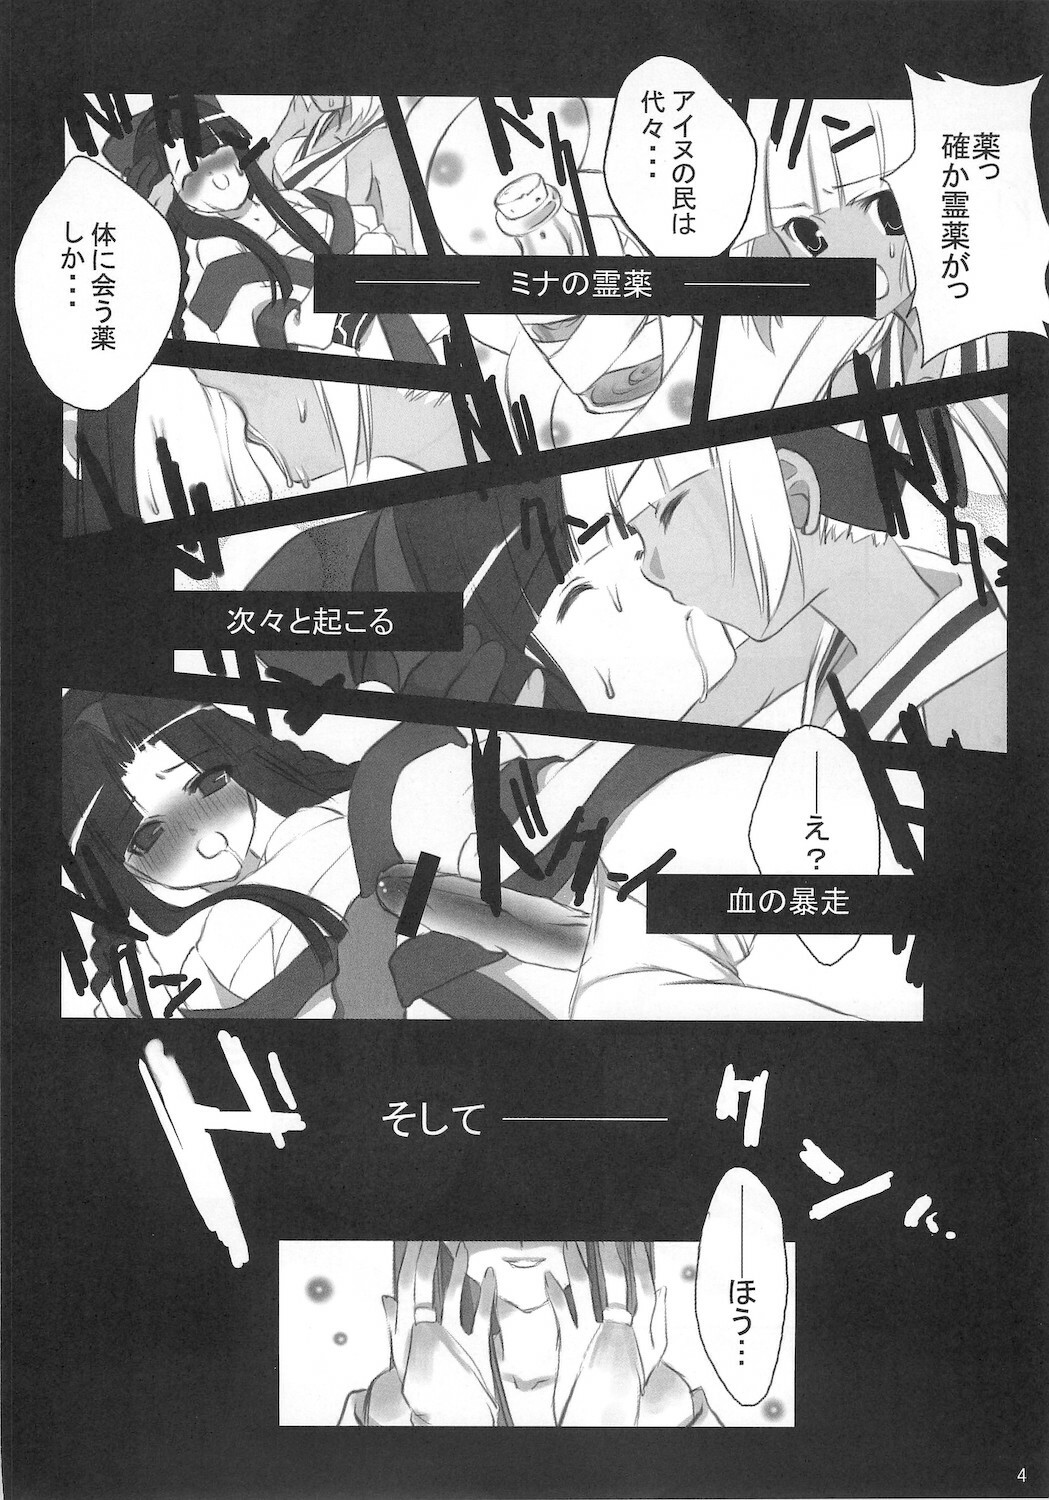 (C65) [Yumeno-Gotosi, SCRAMBLE EGG (G Munyo, Piko)] Samu Zero (Samurai Spirits) page 4 full